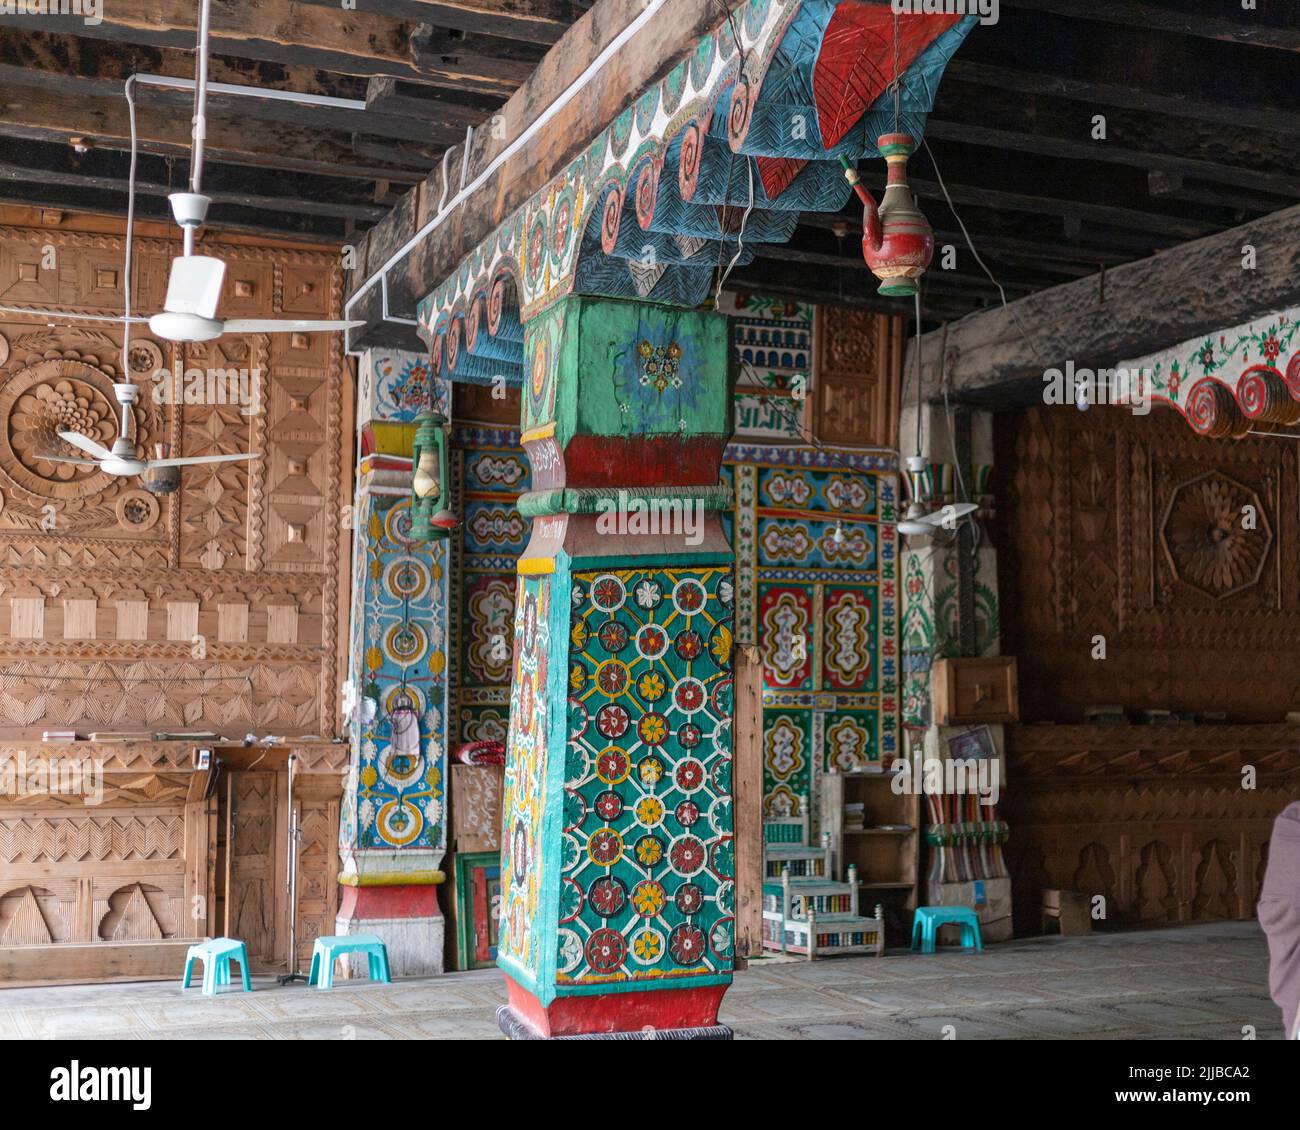 THAL, HAUT DIR, PAKISTAN - 10 JUIN 2022 : la Jamia Masjid vue intérieure d'une mosquée vieille de plusieurs siècles dans le bazar de Thal magnifiquement décoré Banque D'Images